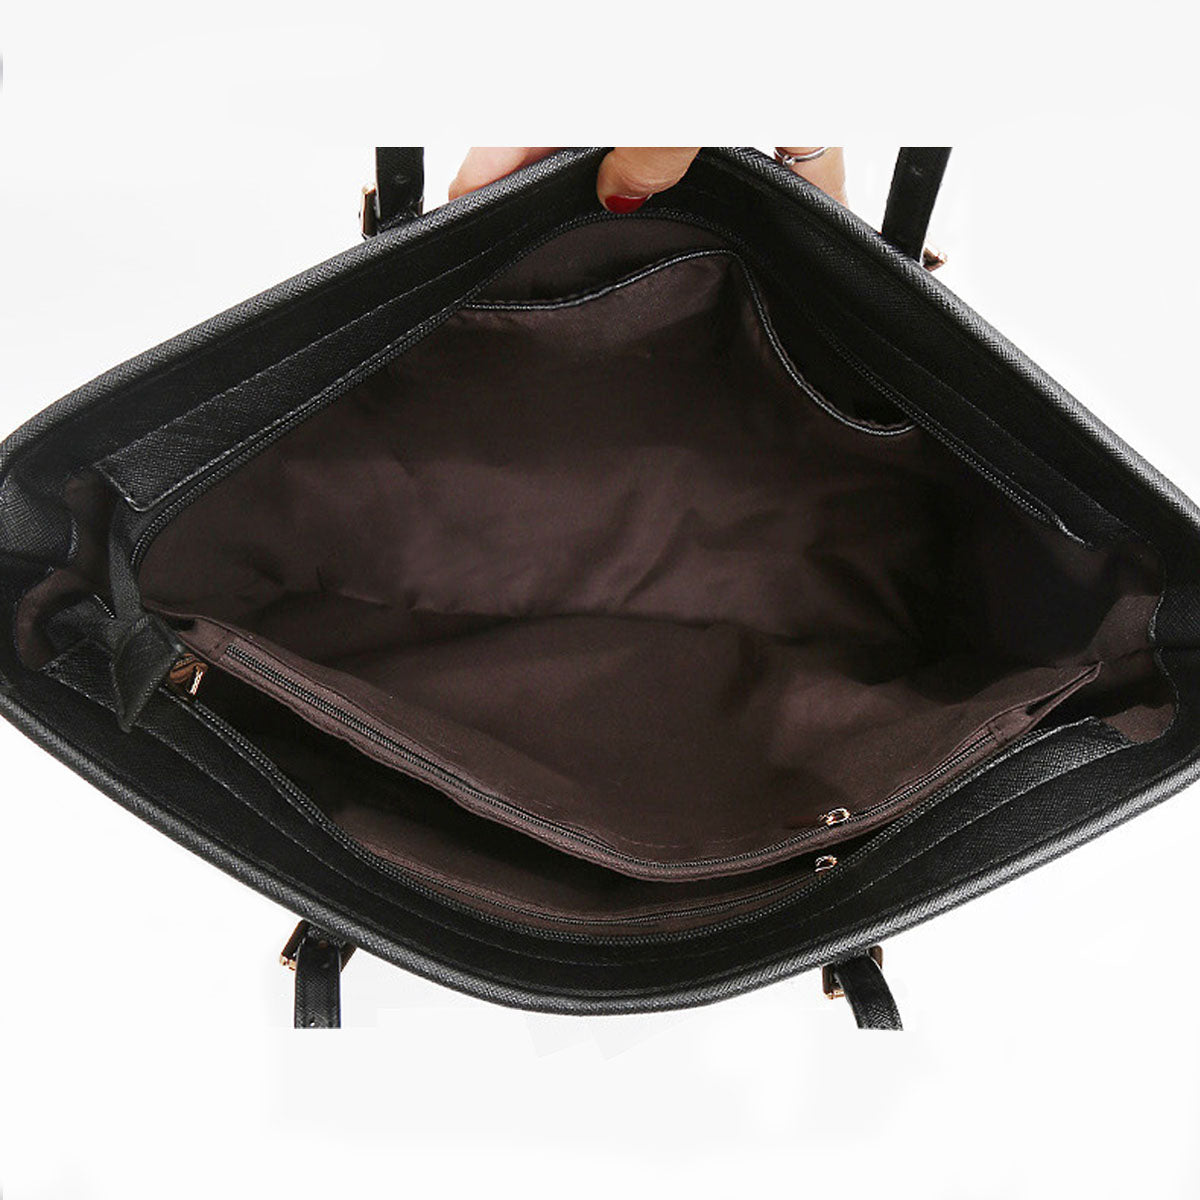 Leonberger Tote Bag V2